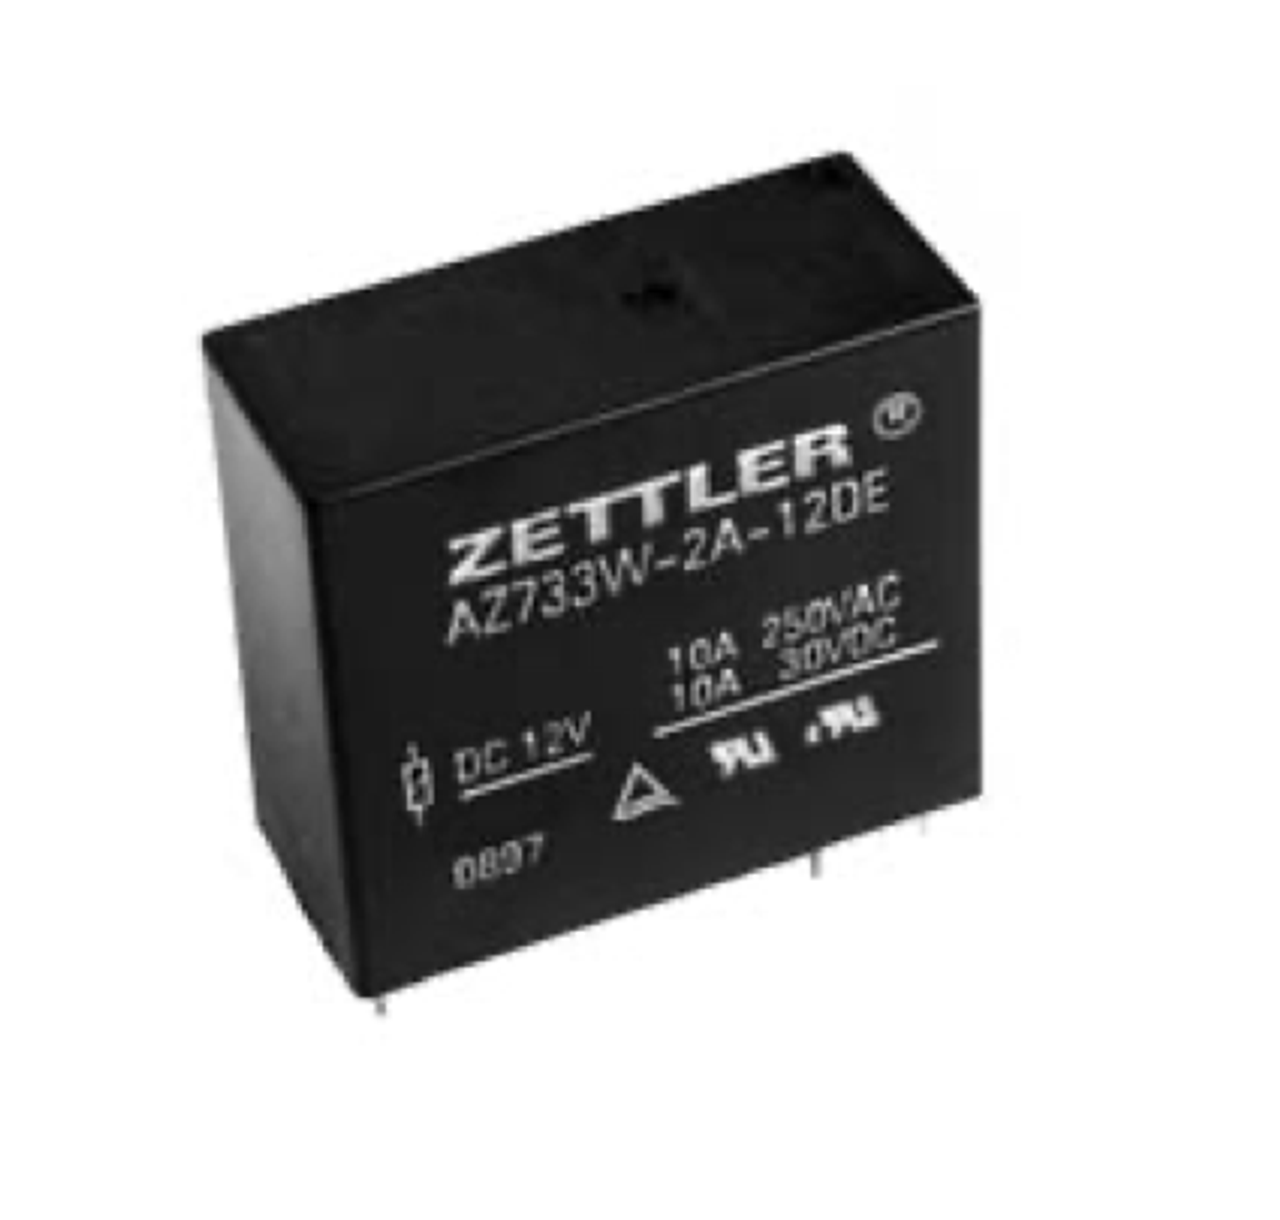 American Zettler AZ733W-2A-110DE Power Relay